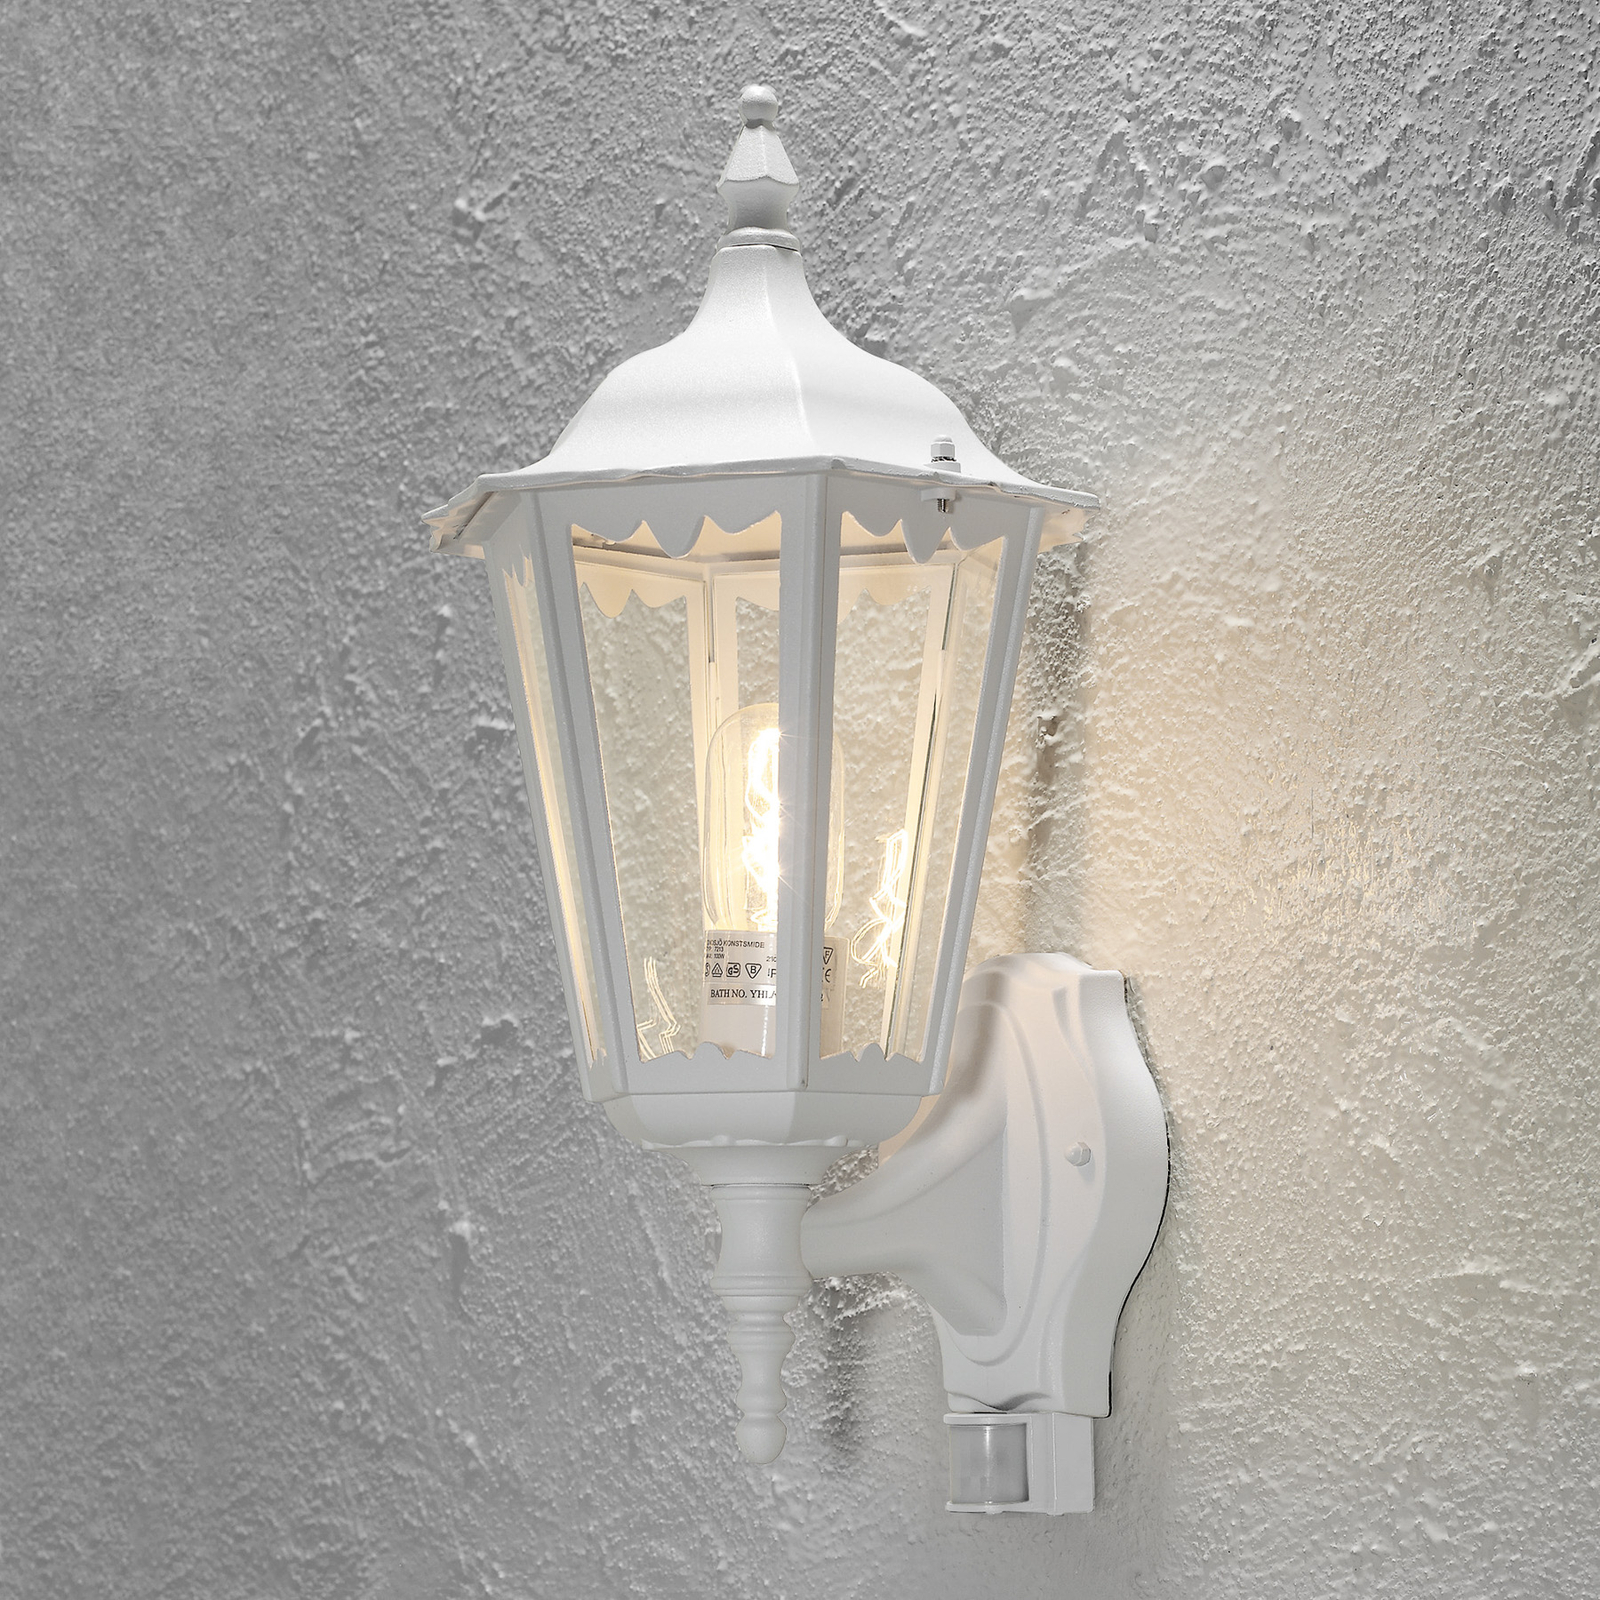 Buitenwandlamp Firenze, sensor, staand, wit